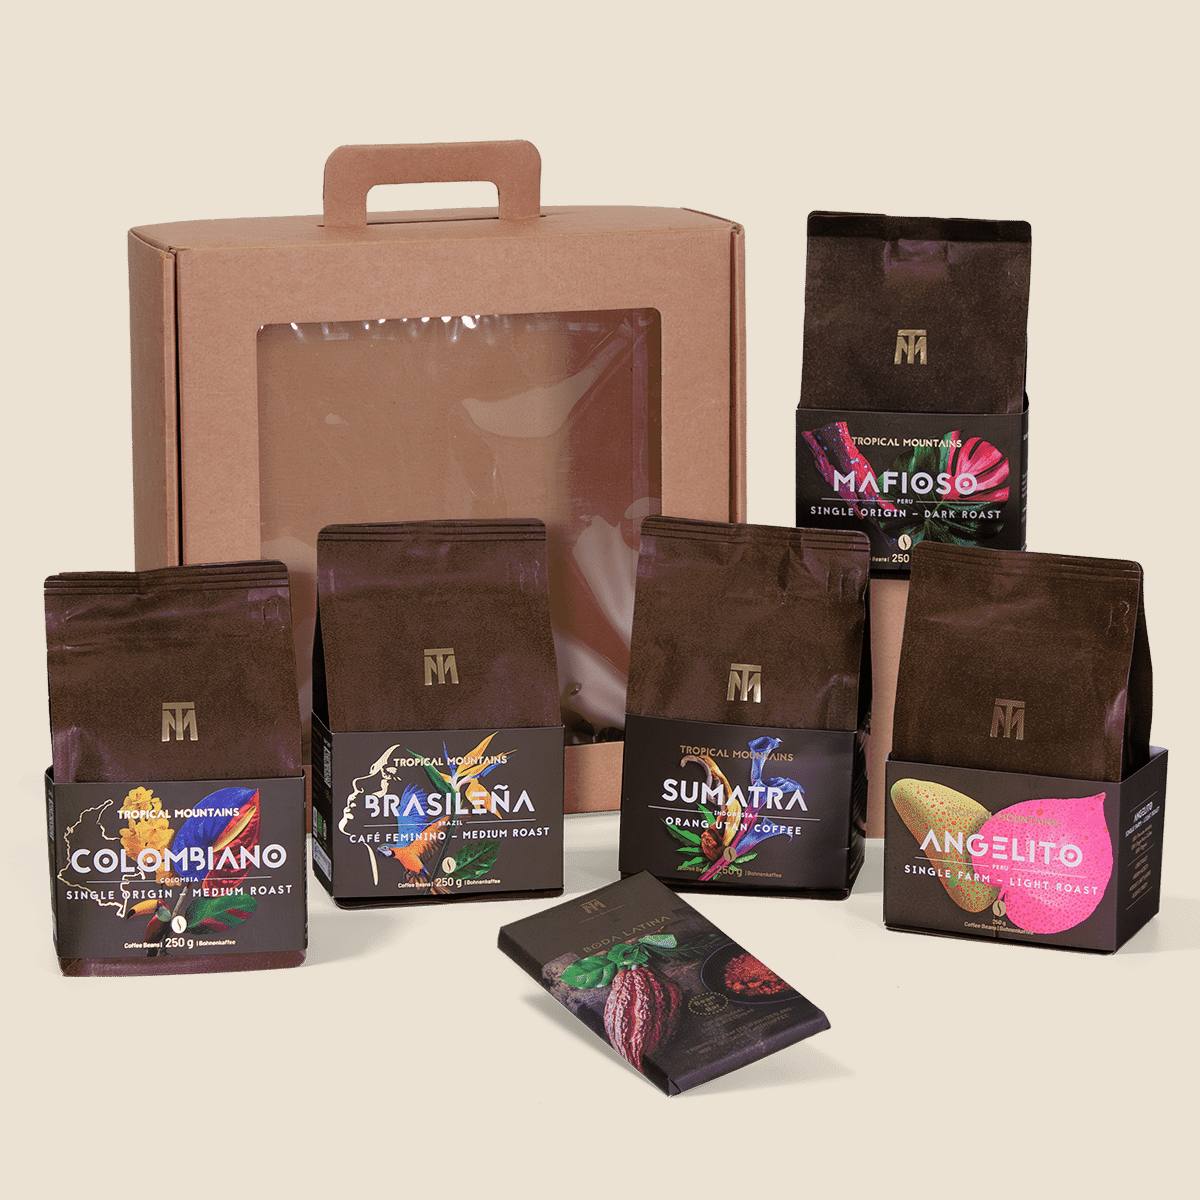 GeschenkIdee SINGLE ORIGIN COFFEE: Fair Trade Kaffeebohnen und Schokolade